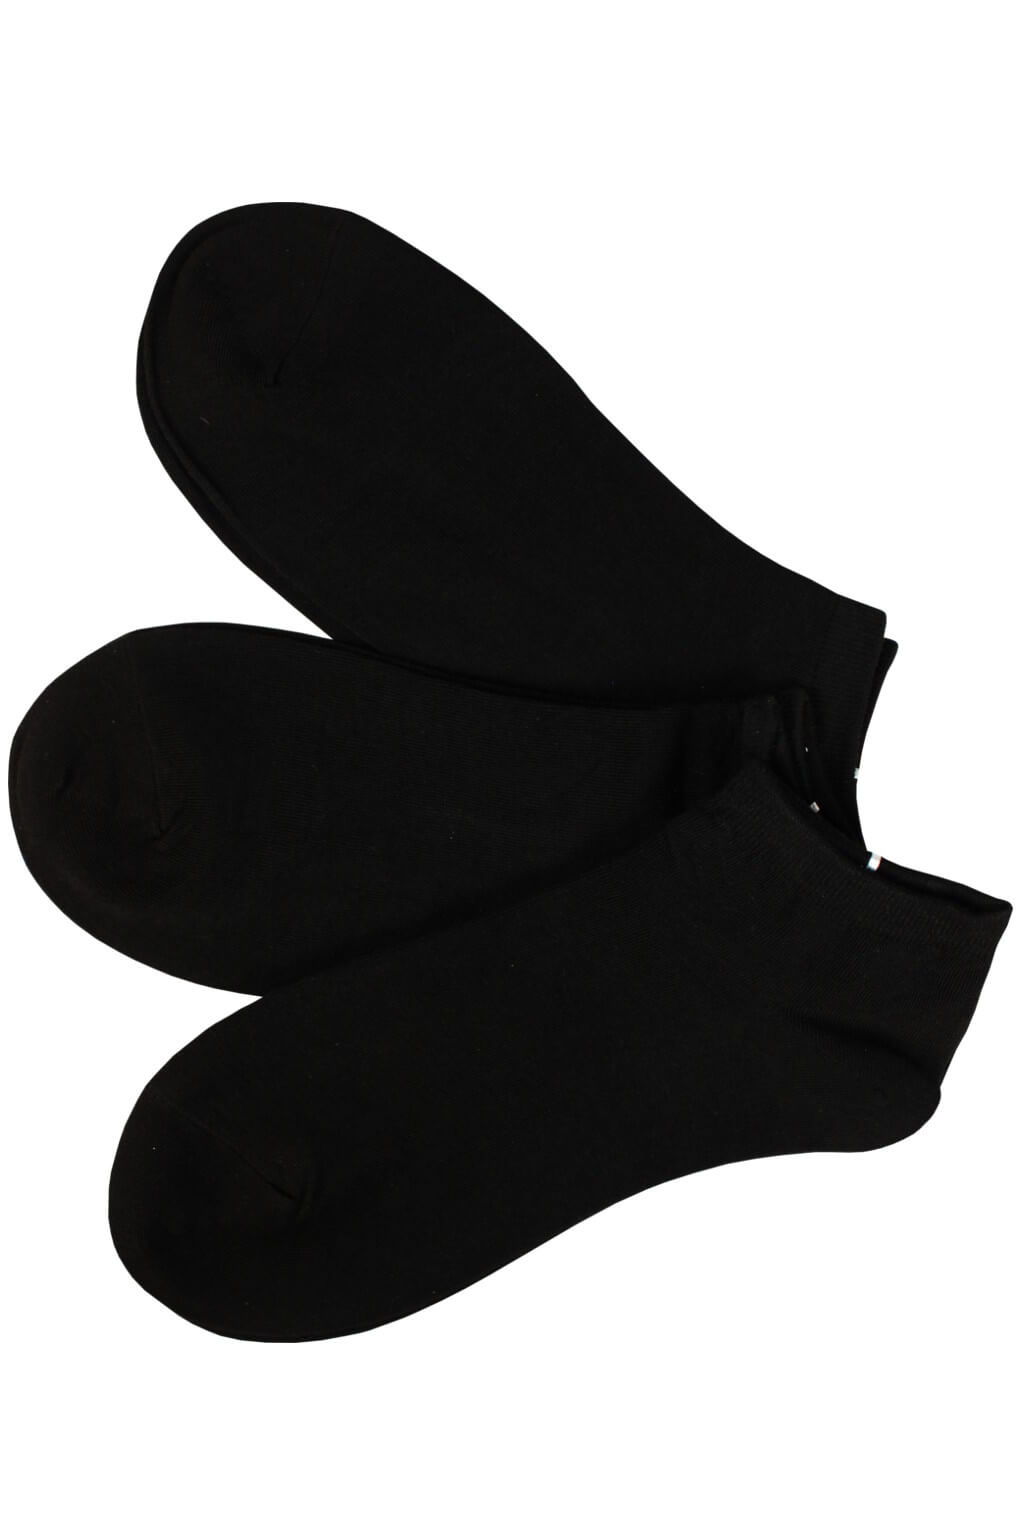 Dámské kotníčkové ponožky bavlna CW349 -3 bal 39-42 černá